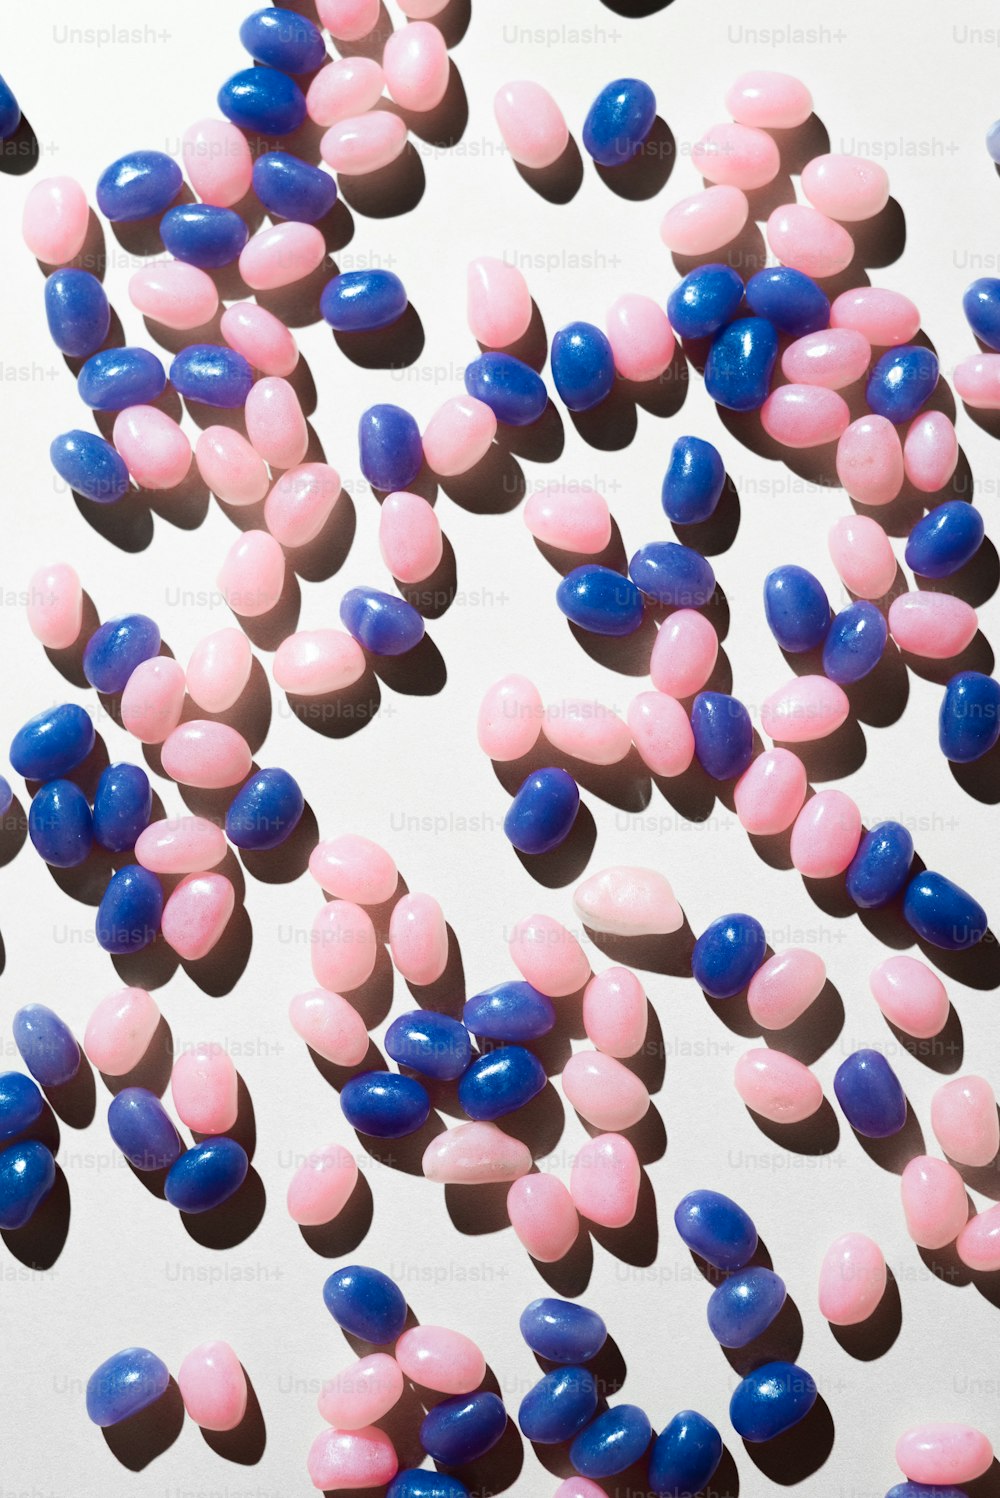 Un grande gruppo di pillole rosa e blu